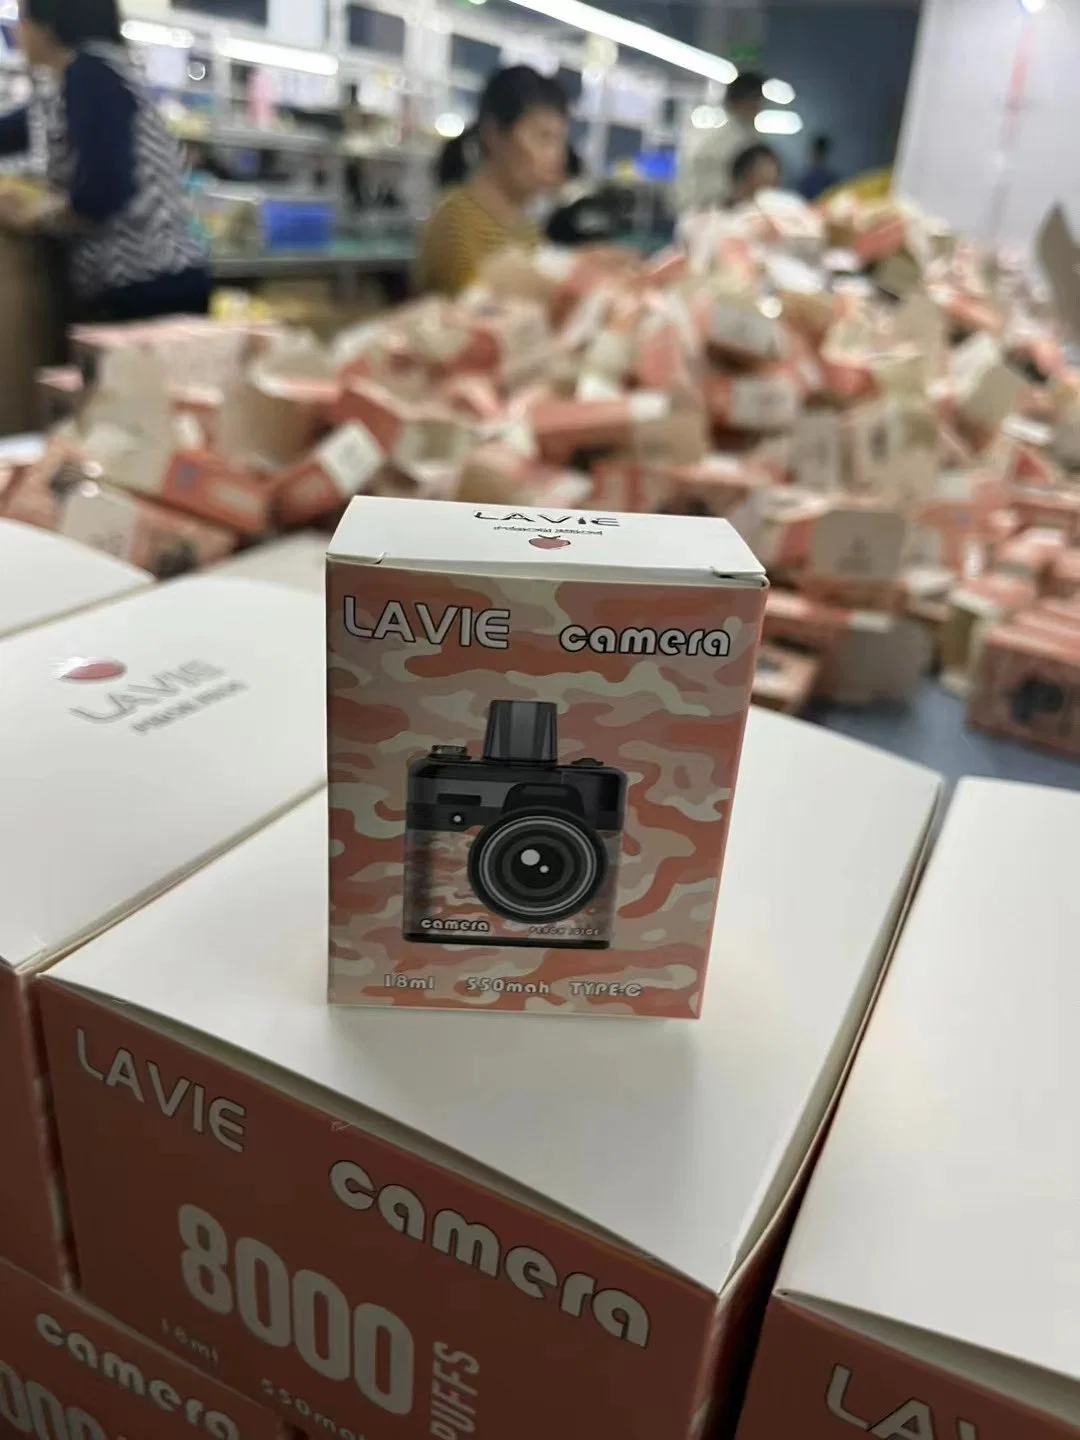 8000 Puff descartáveis Pape Factory Lavie Camera e-CIG 8K Puffs Vape